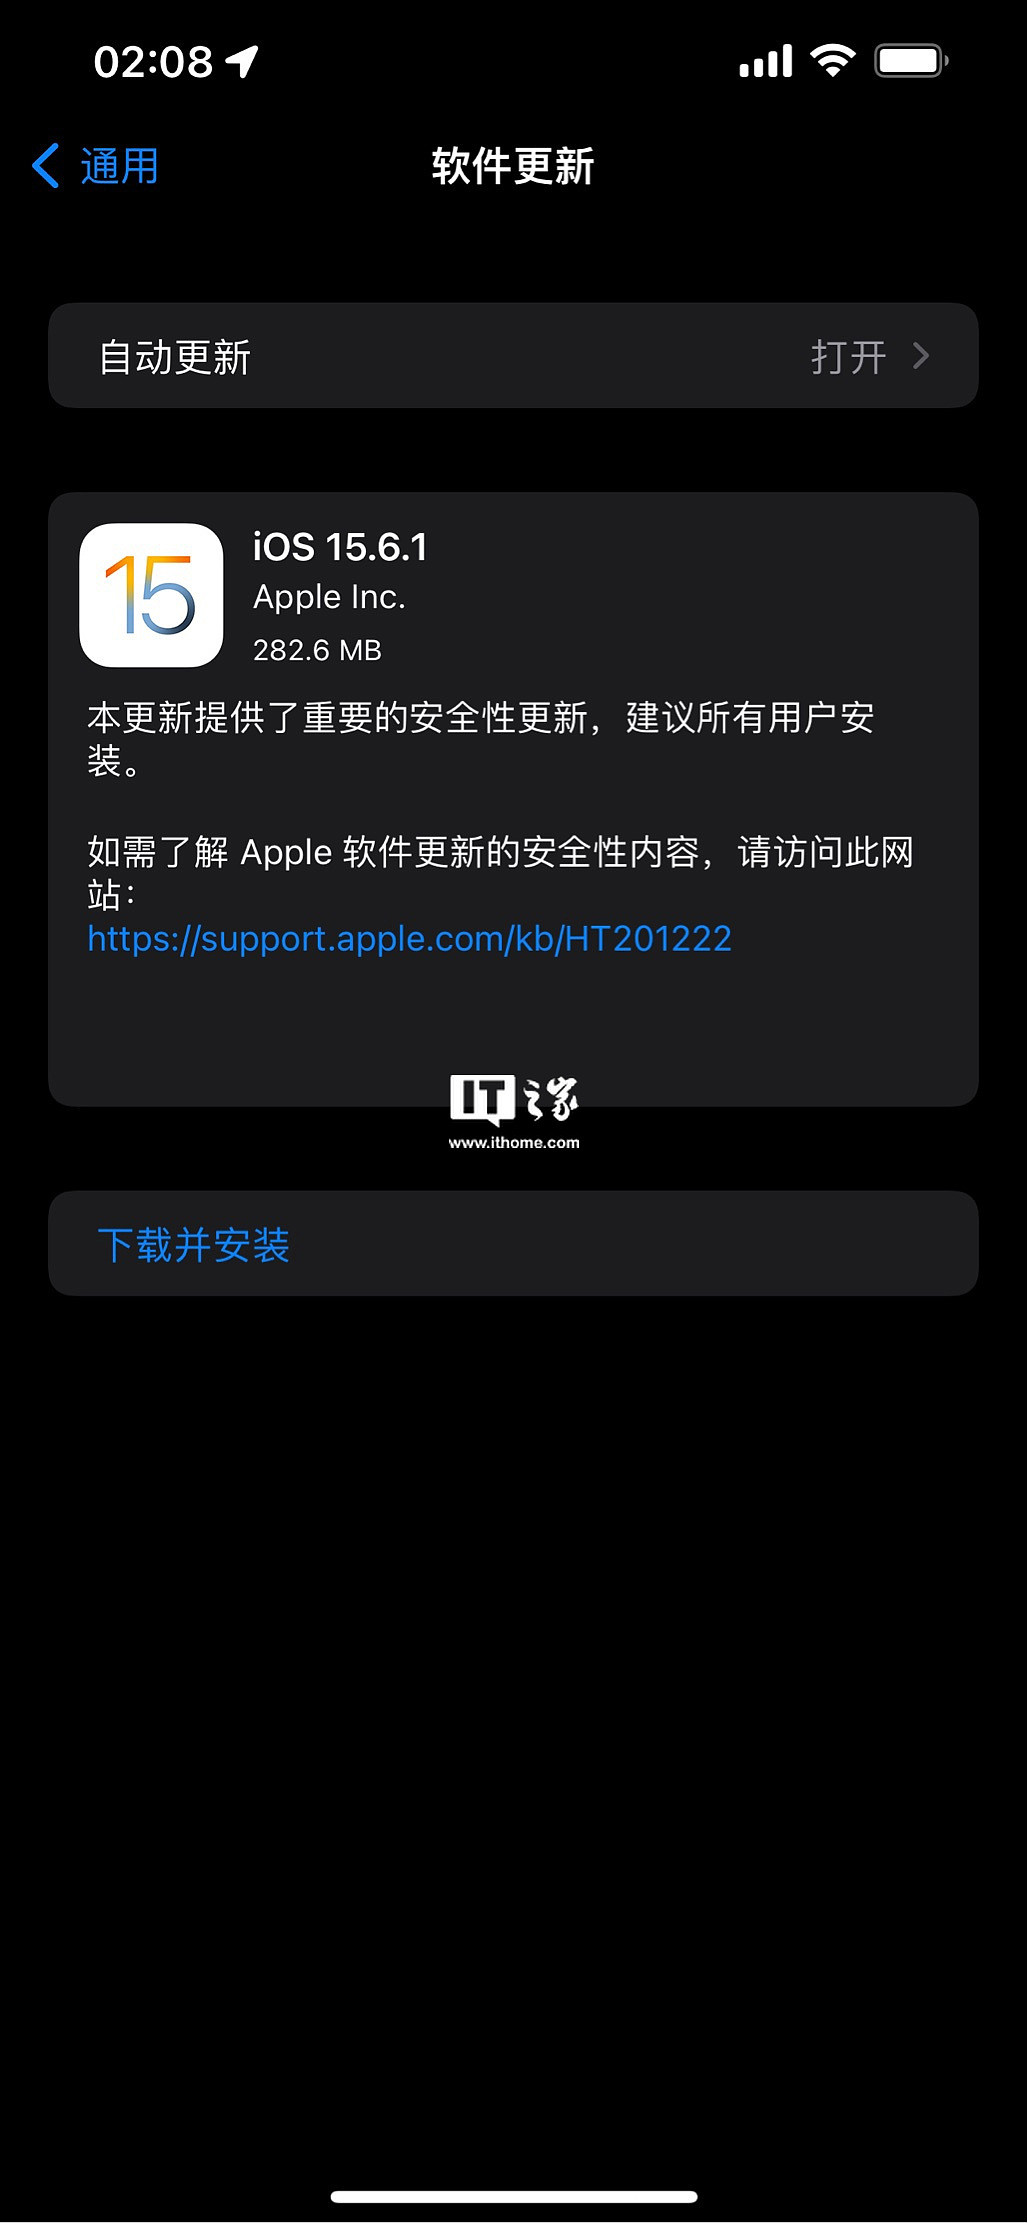 苹果 iOS 15.6.1 / iPadOS 15.6.1 正式版发布 - 2